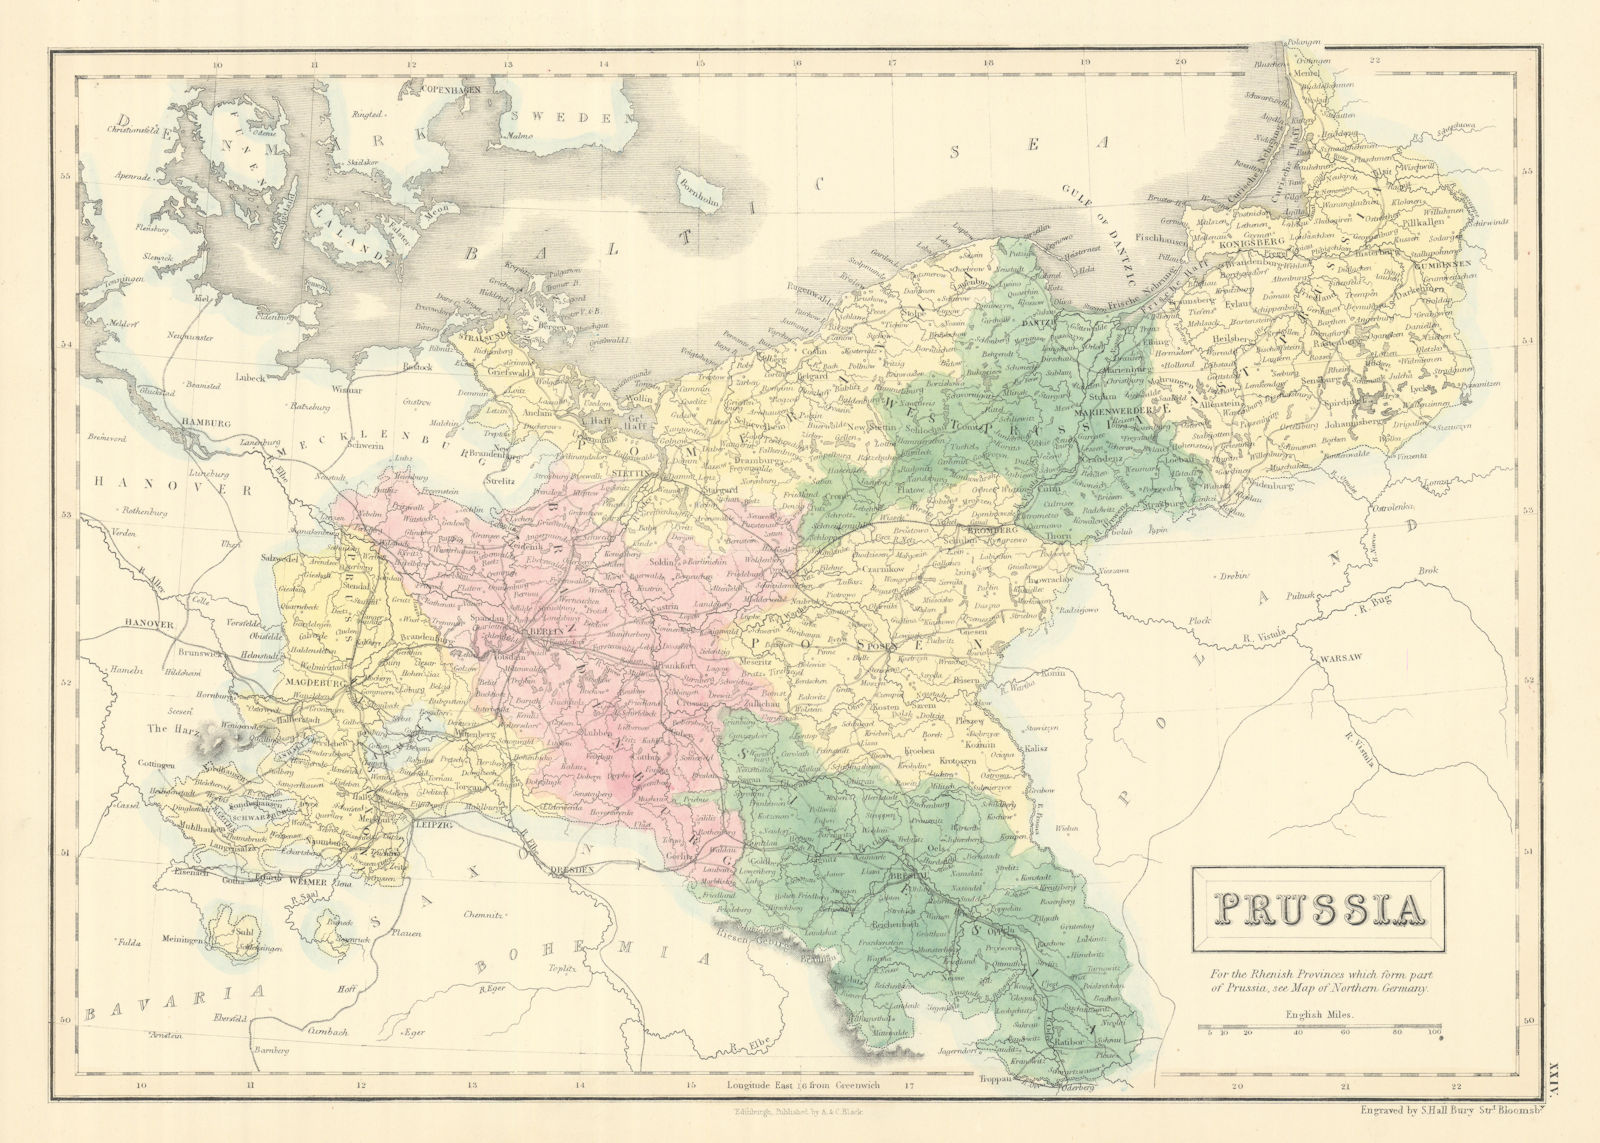 Associate Product Prussia. Pomerania Poland Silesia Posen Brandenburg. SIDNEY HALL 1854 old map